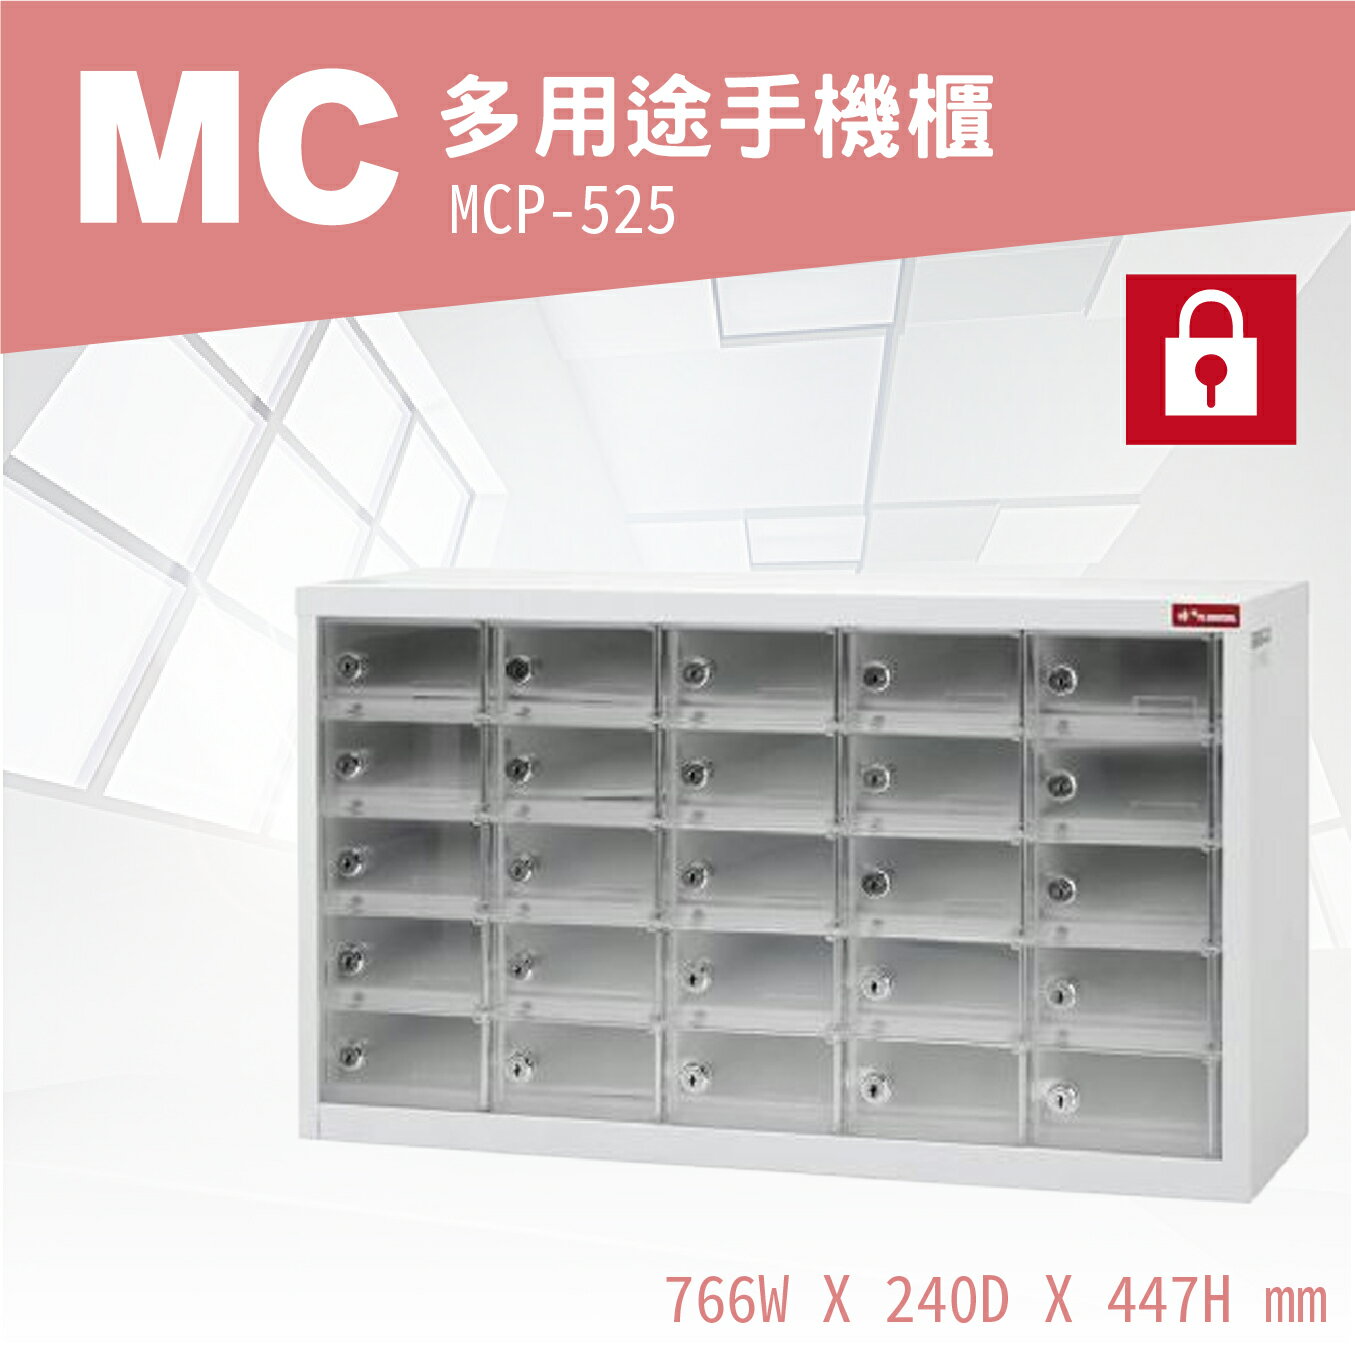 【勁媽媽-樹德專業】MCP-525 MC多用途手機櫃 分類櫃 多功能 集中櫃 置物櫃 電子產品置物櫃 辦事處